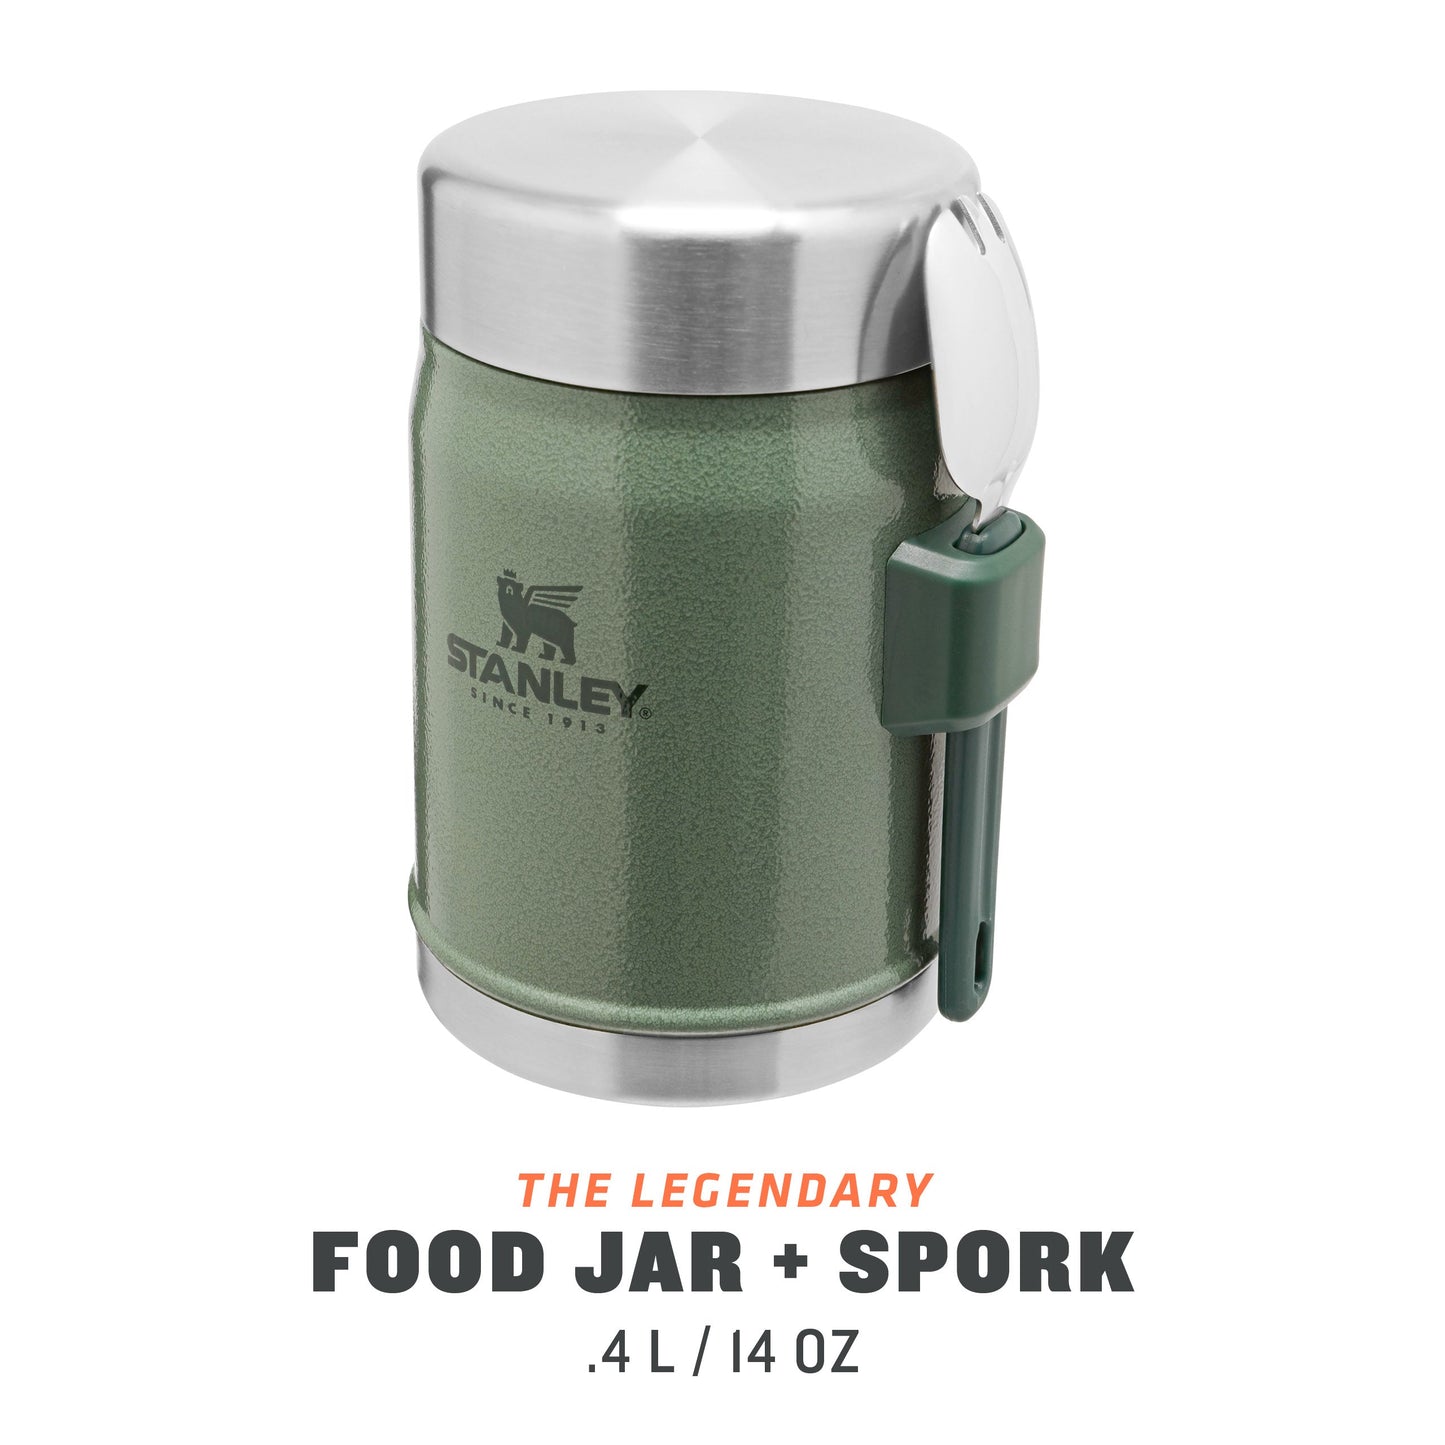 Classic Legendary Food Jar + Spork | 0.4L